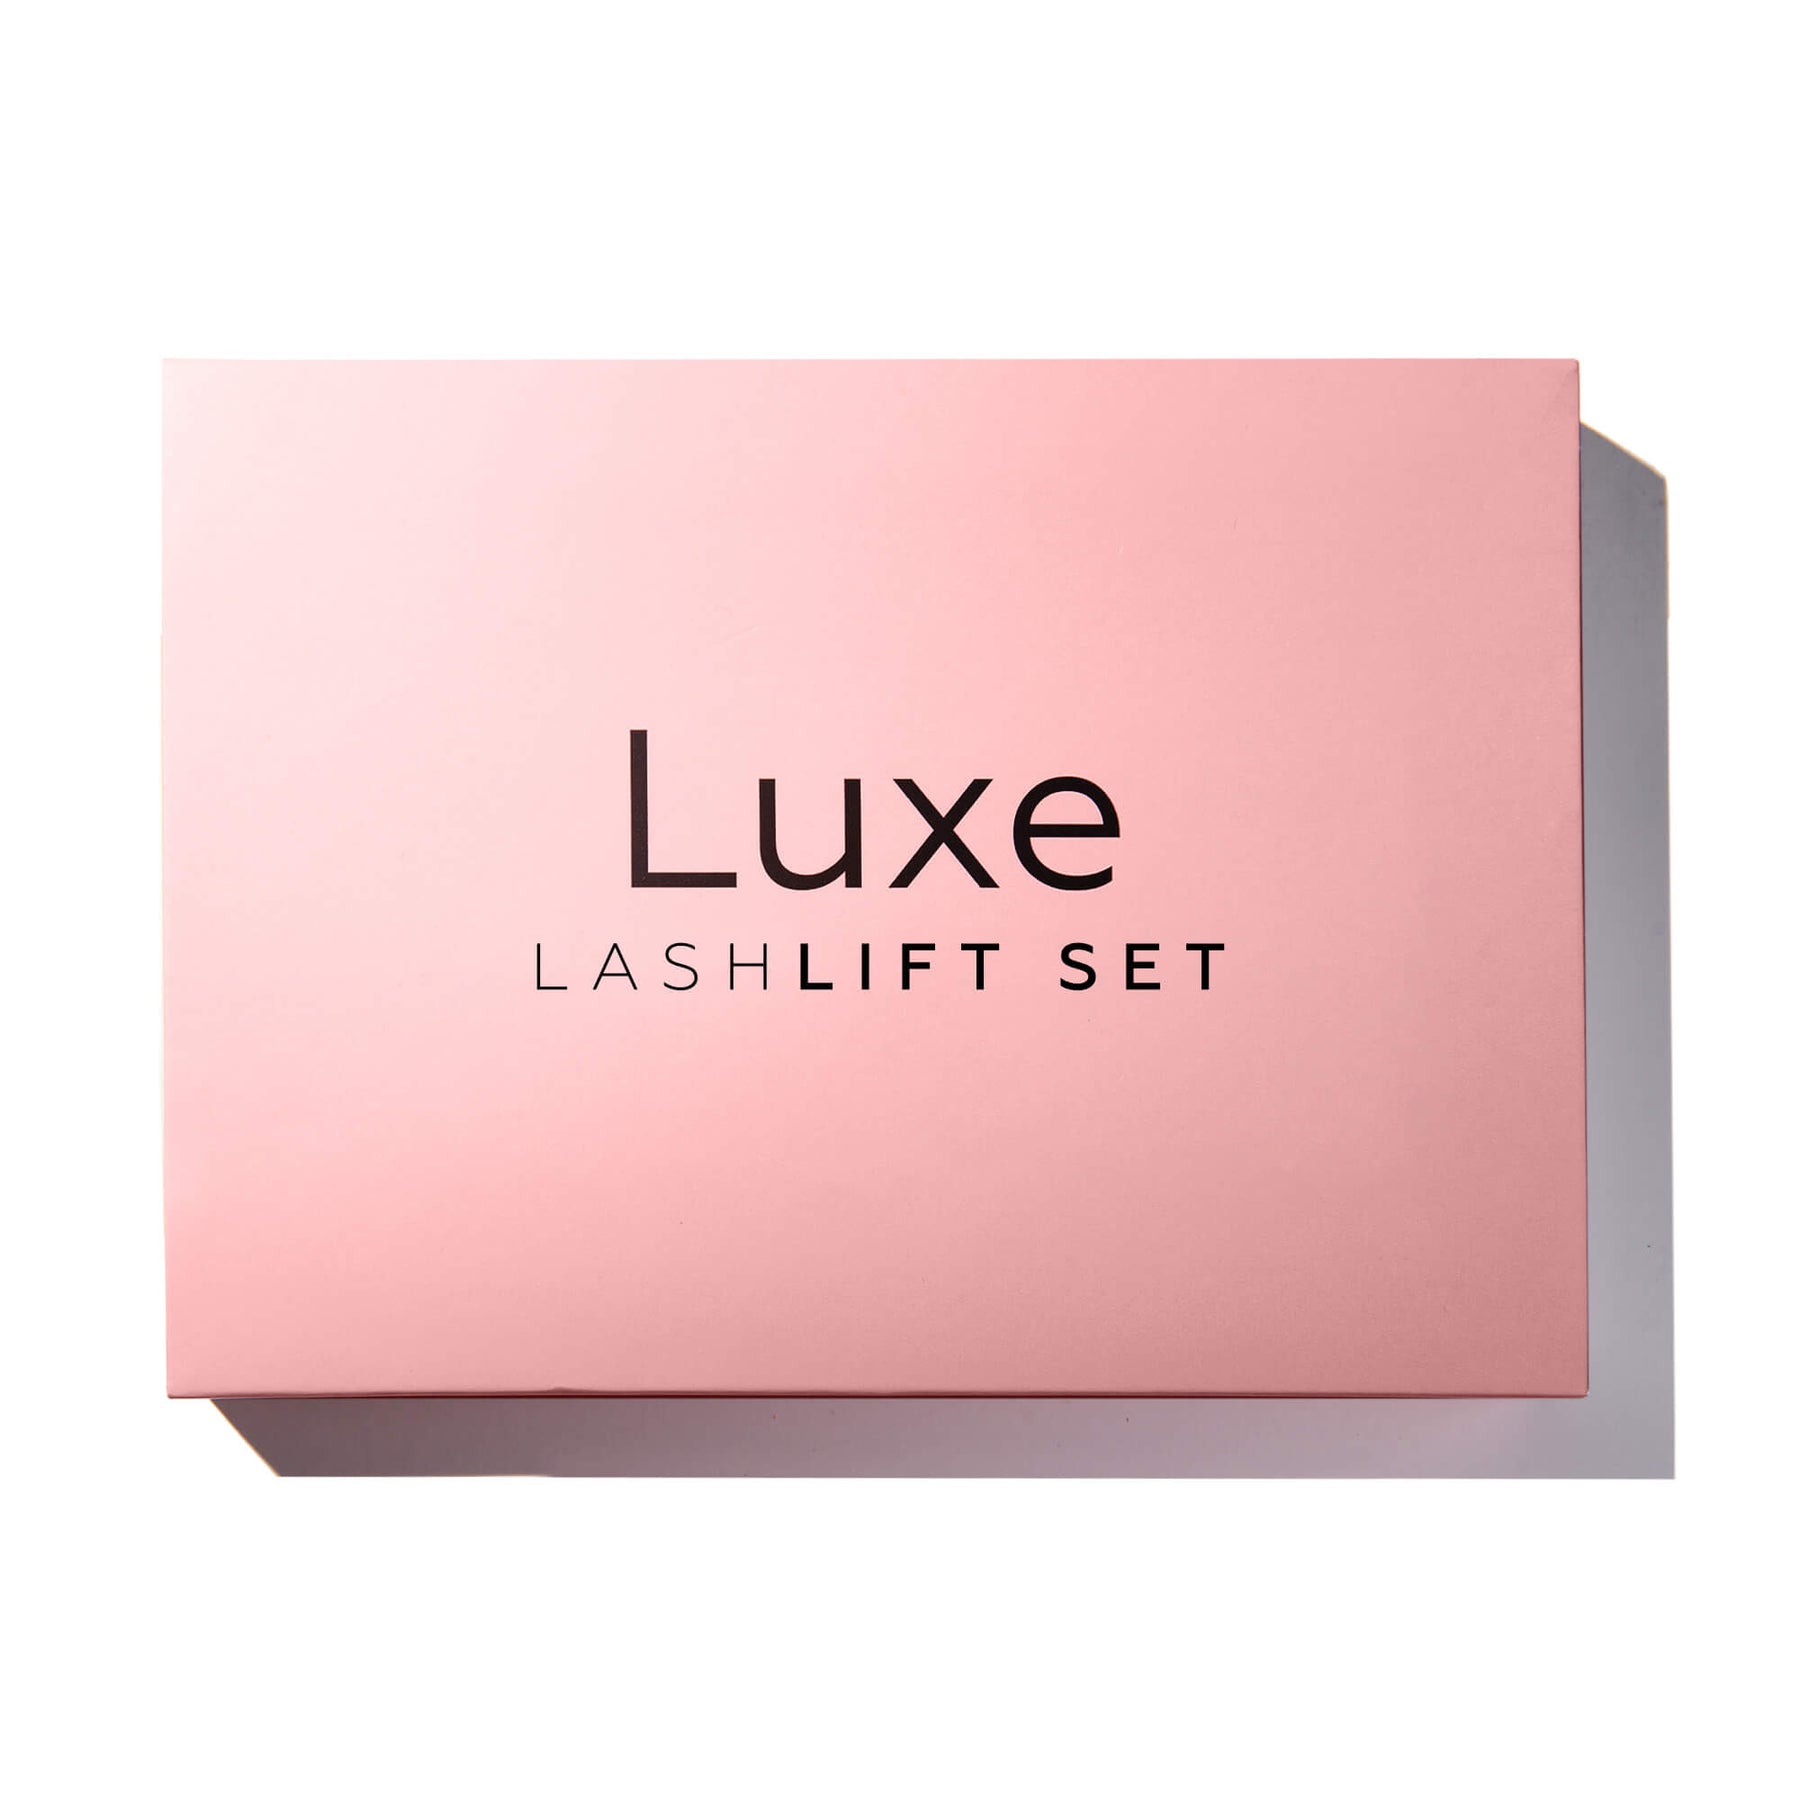 luxe lash lift kit